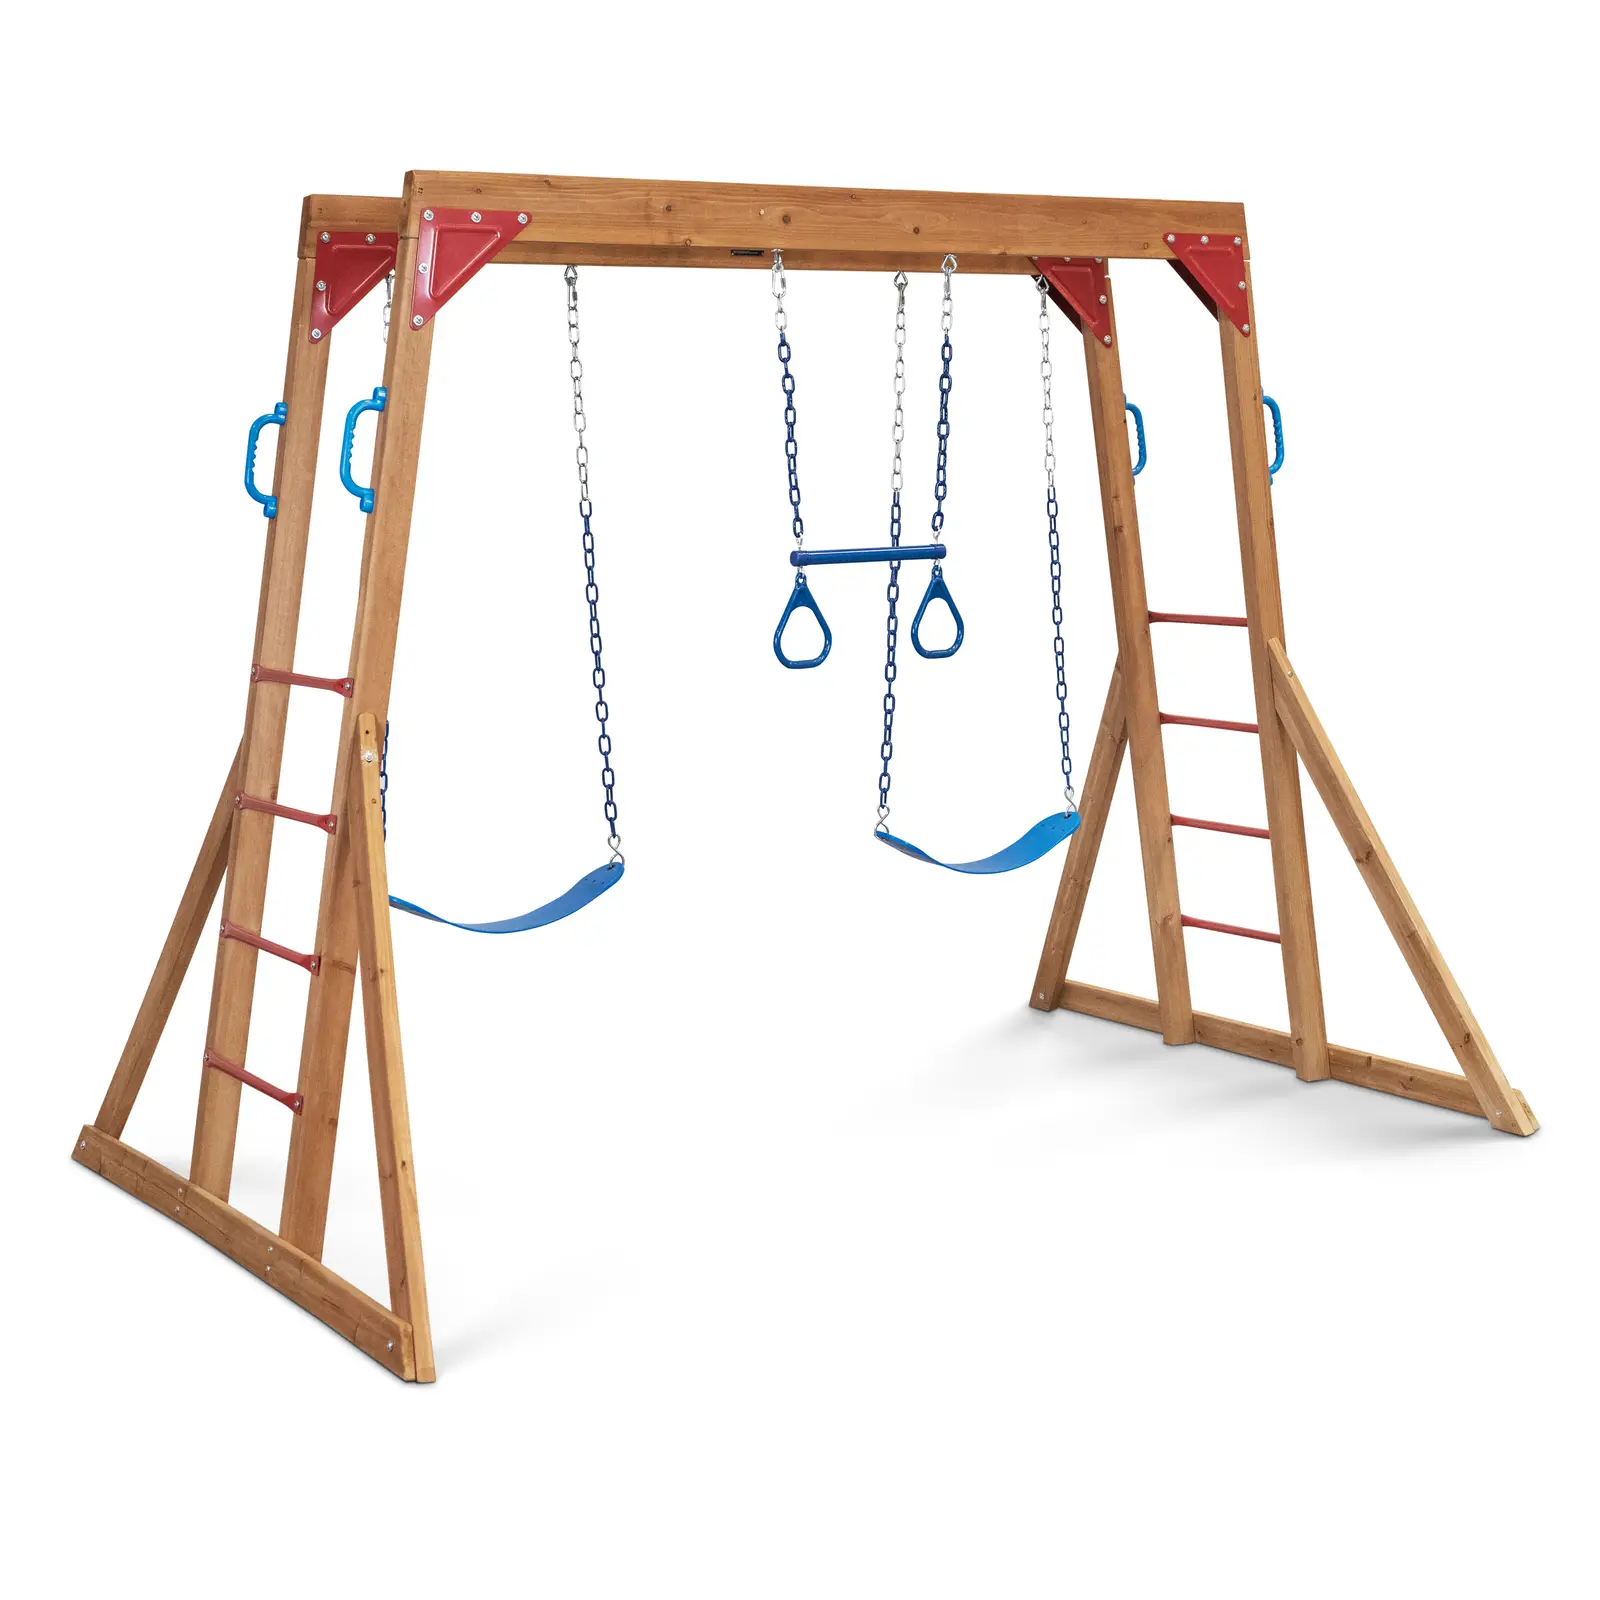 Estructura de escalada infantil - 2 columpios - anillas de gimnasia - barras de escalada